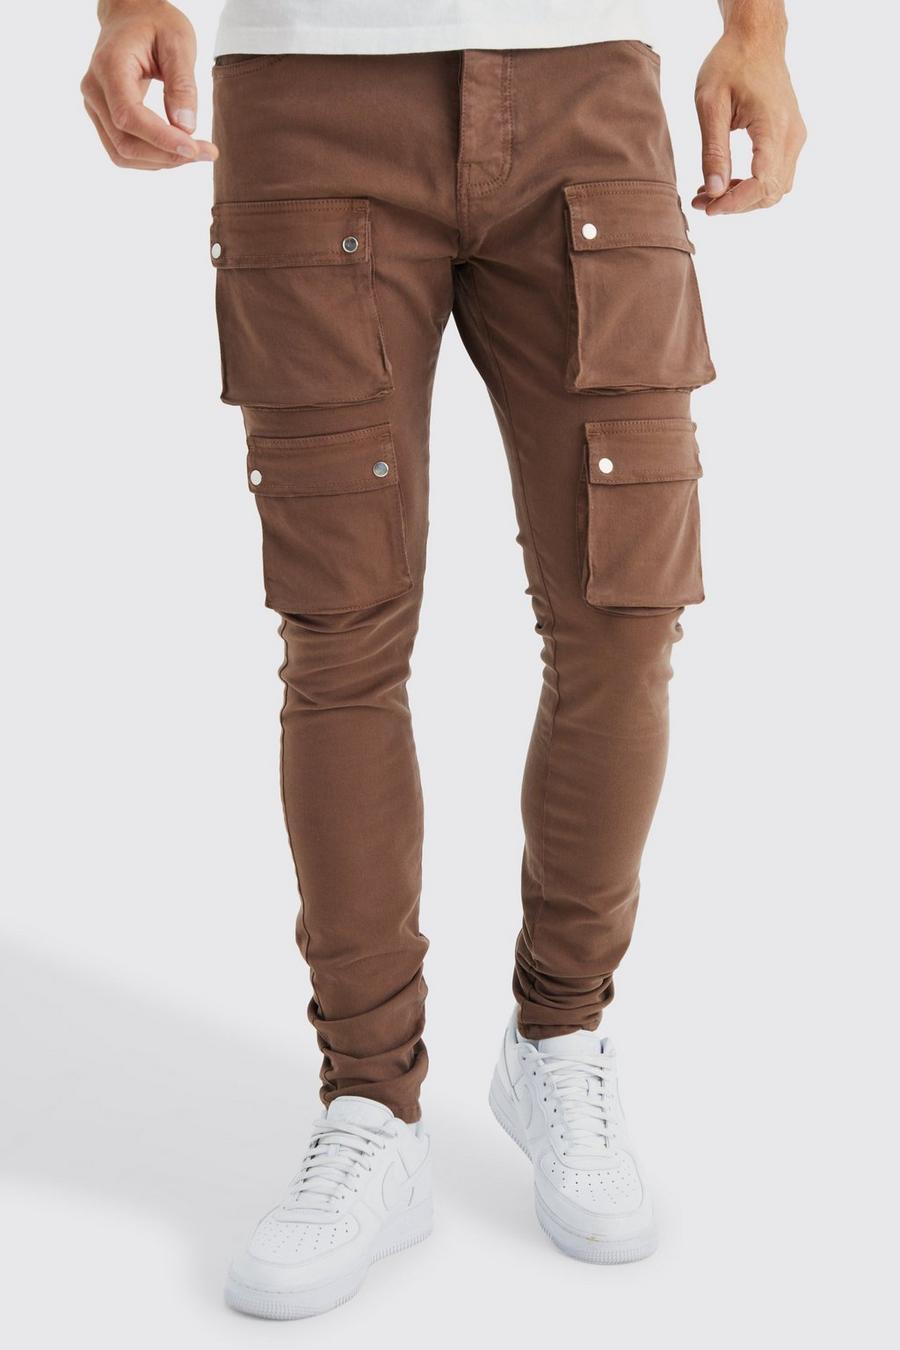 Tall Skinny Cargo-Hose mit Taschen, Chocolate brown